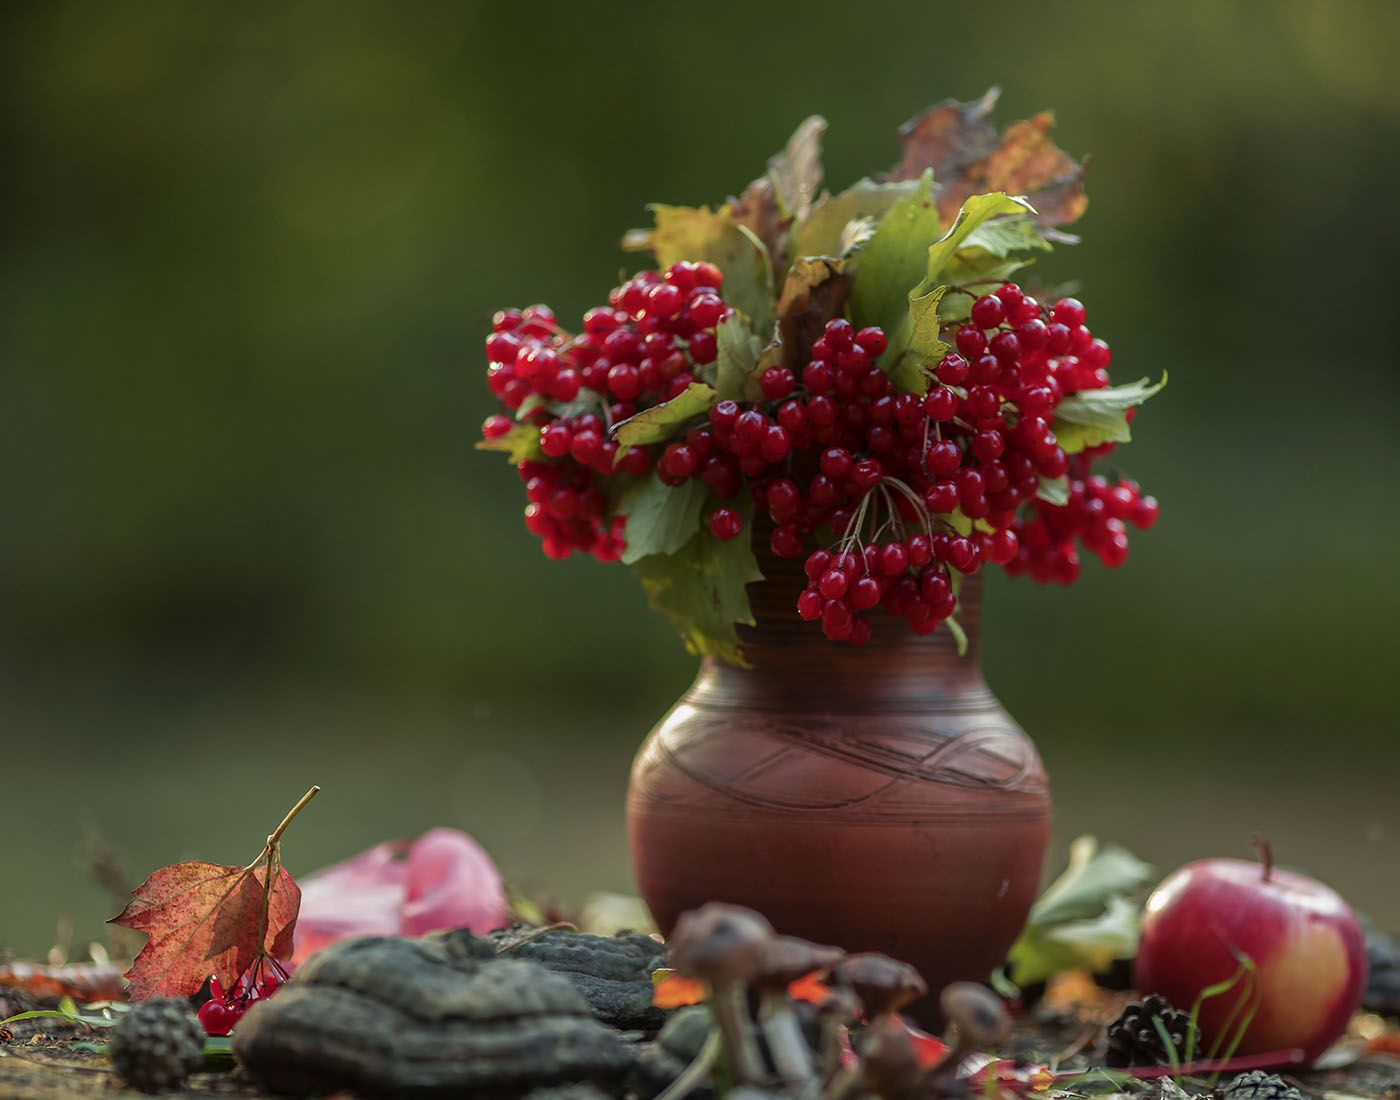 осень, натюрморт,ягоды, калина,листья,яблоко, stilllife, autumn, berry,kalina, foliage,apple, nature, Юлия Стукалова